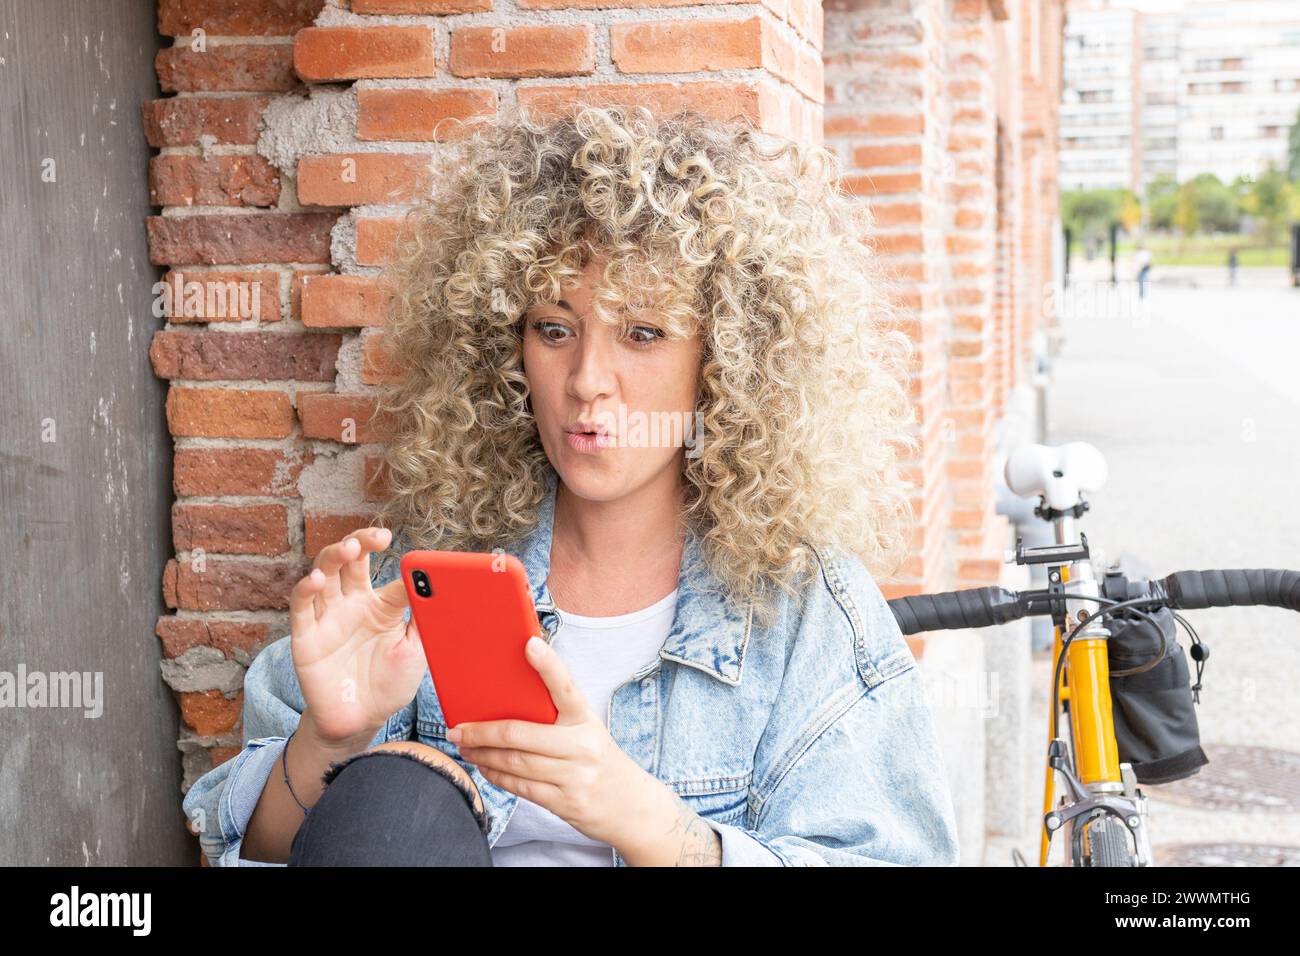 giovane donna caucasica con capelli biondi ricci, sorridente e sorpreso, chiacchierando con il suo smartphone rosso e la sua classica bicicletta gialla Foto Stock